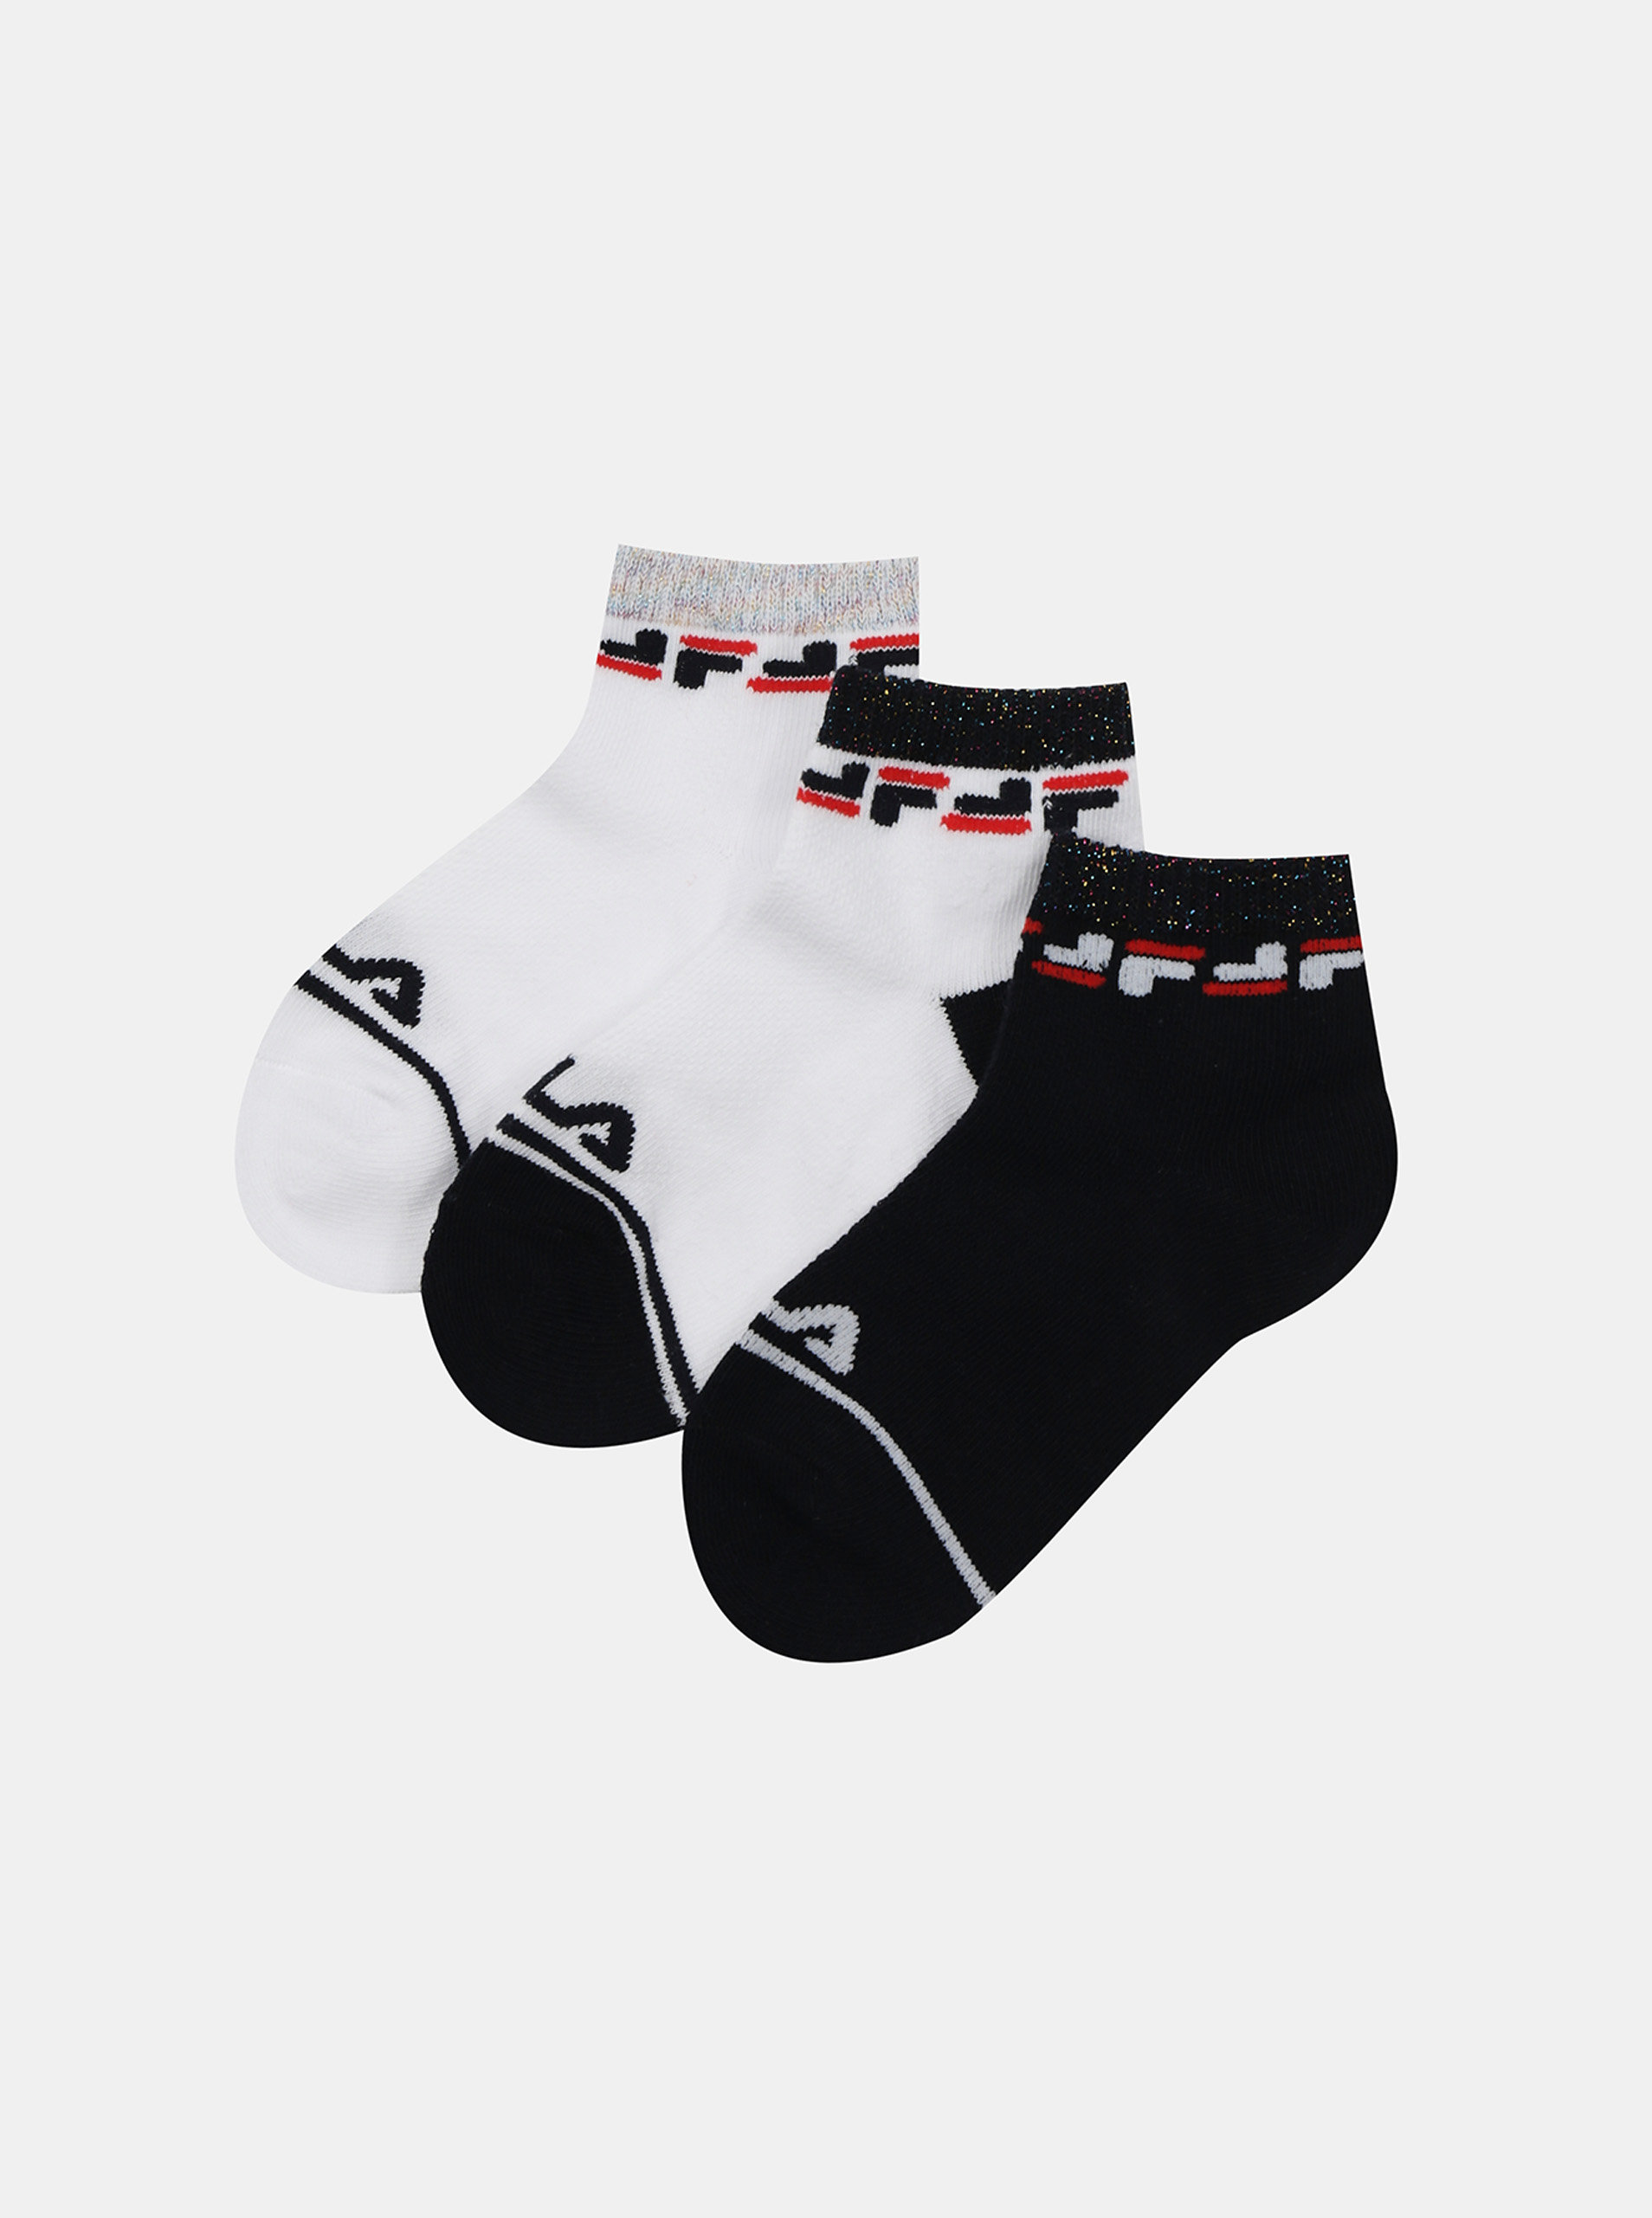 Fotografie Sada tří párů holčičích ponožek v bílé a černé barvě FILA